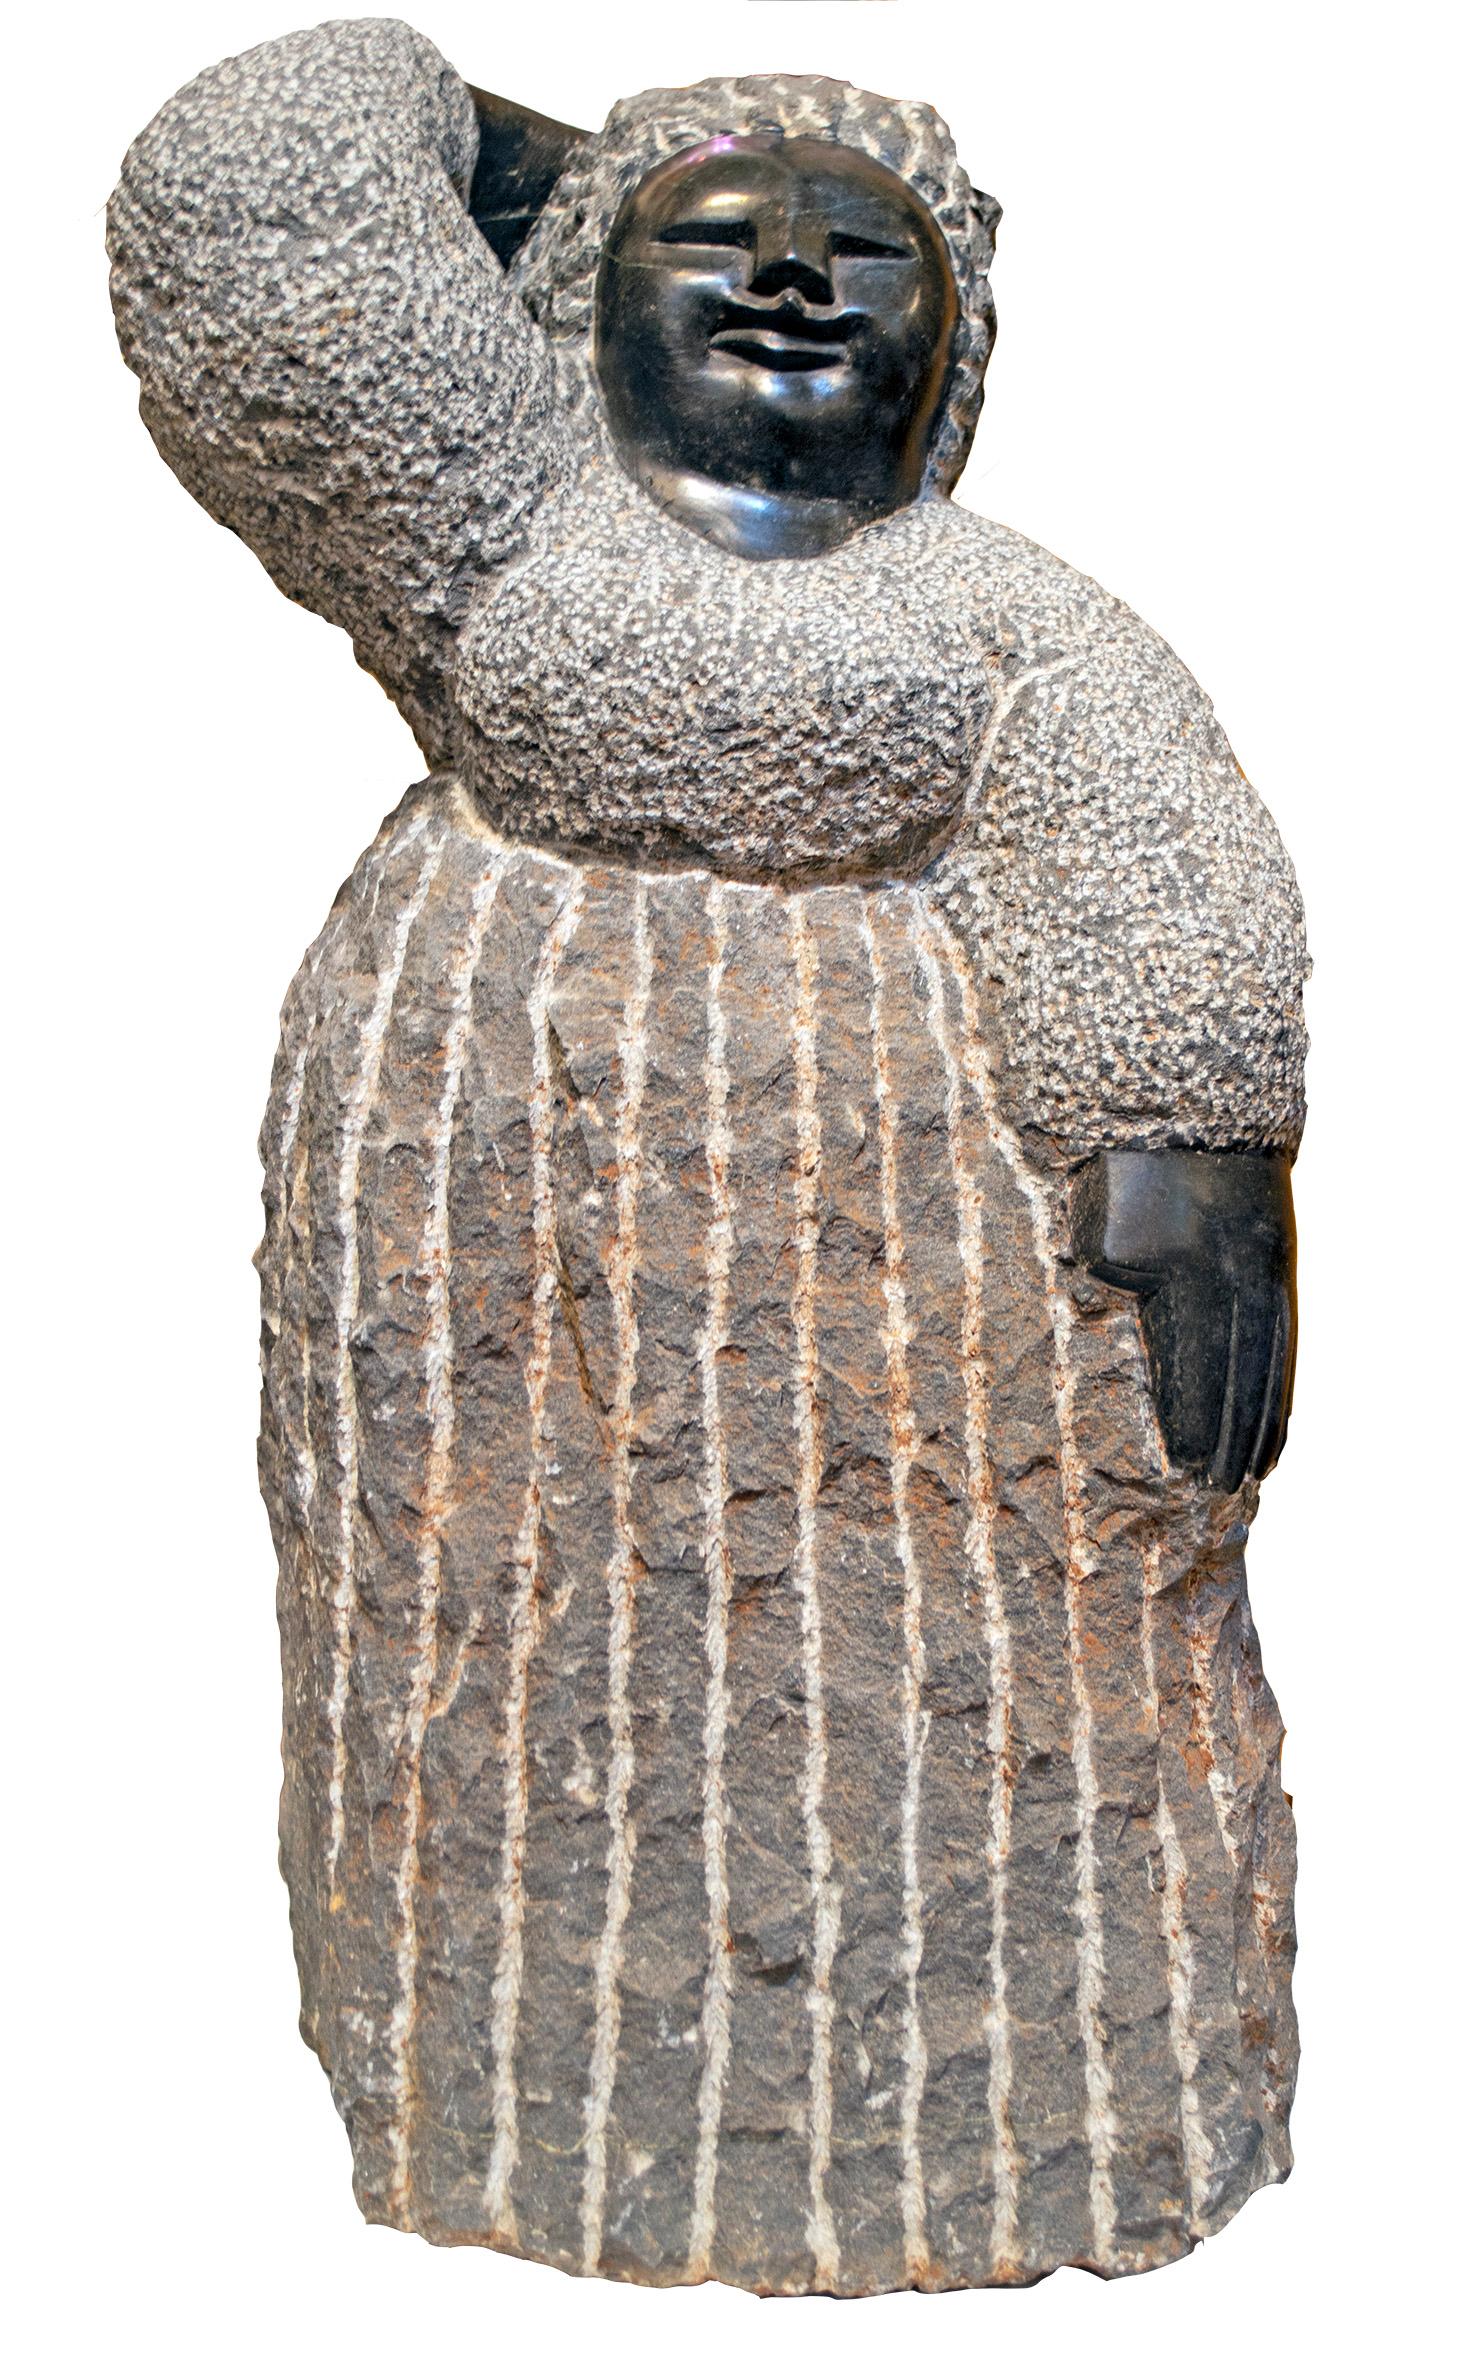 Preoccupied" est une sculpture originale en serpentine noire réalisée par la célèbre artiste shona de deuxième génération Colleen Madamombe. La sculpture présente un personnage commun à l'œuvre de Madamombe : une femme au visage rond, vêtue d'une